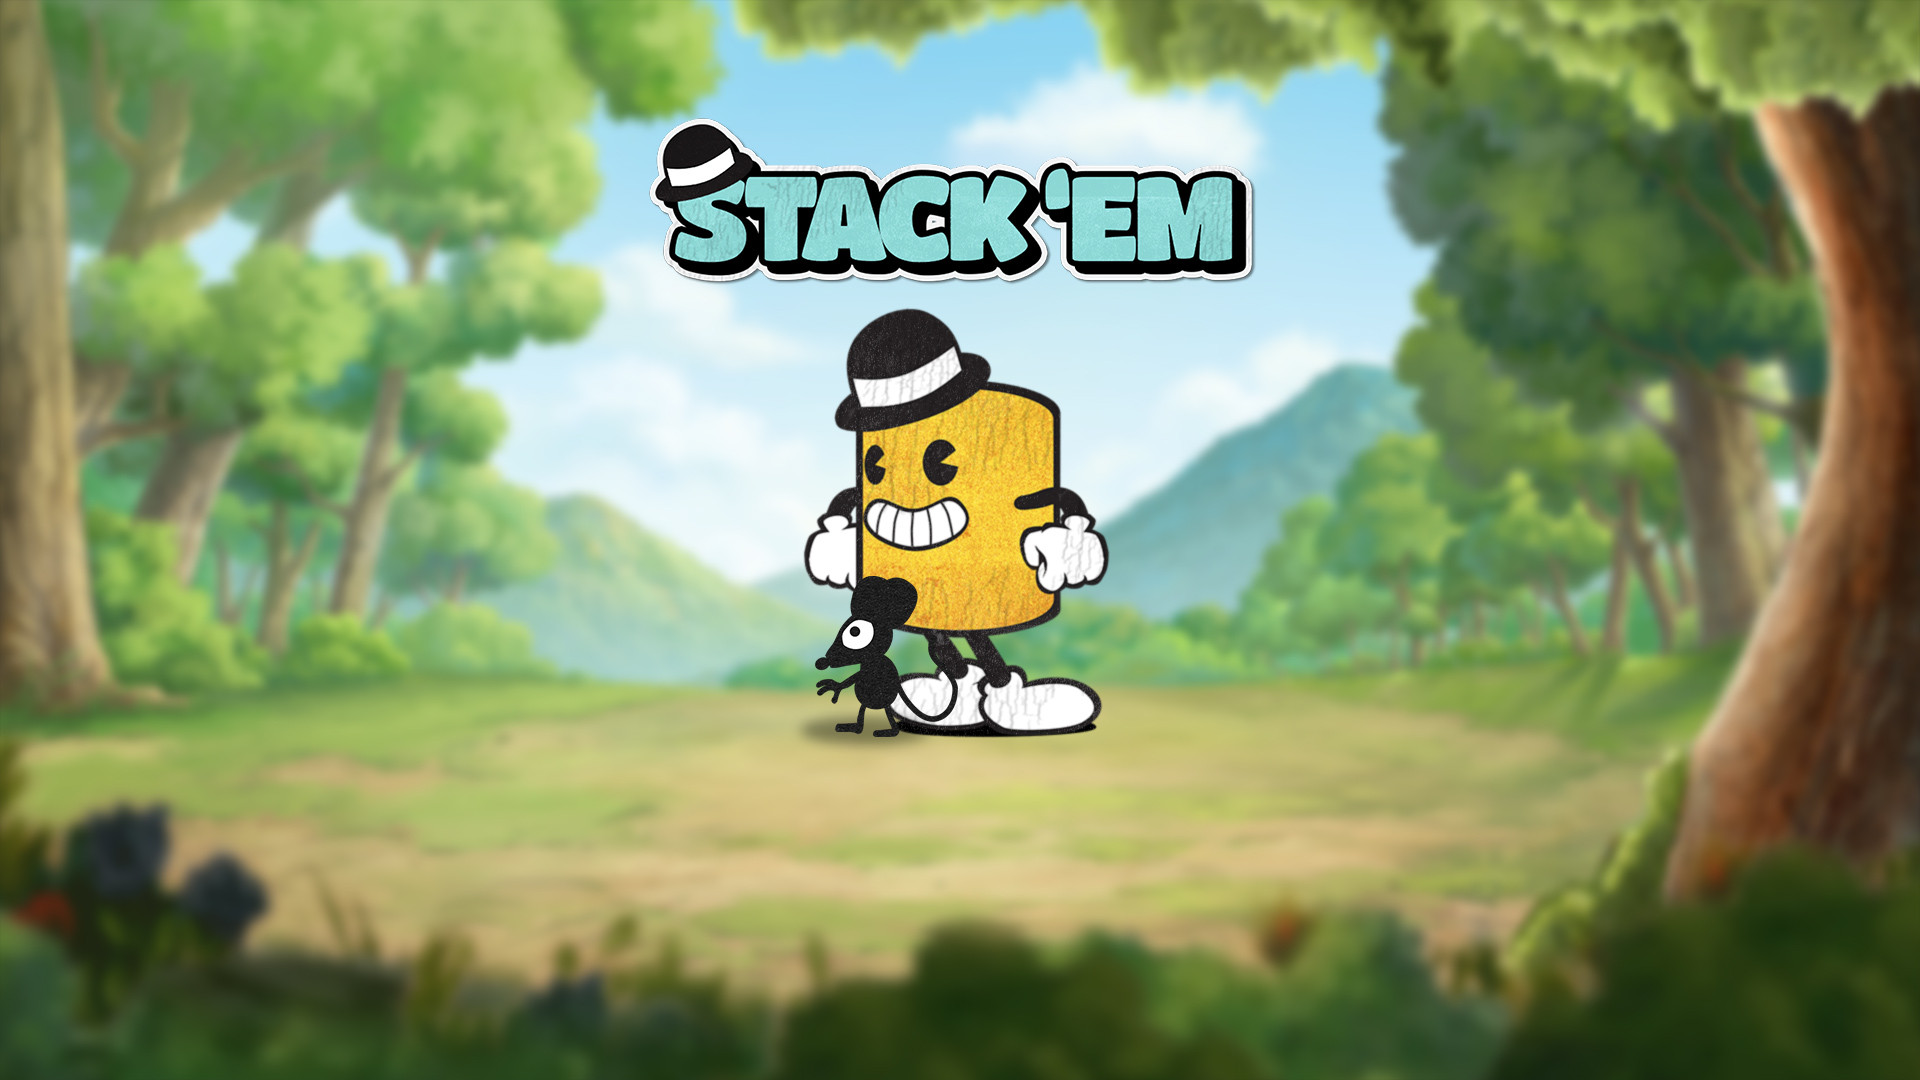 Stack ‘em